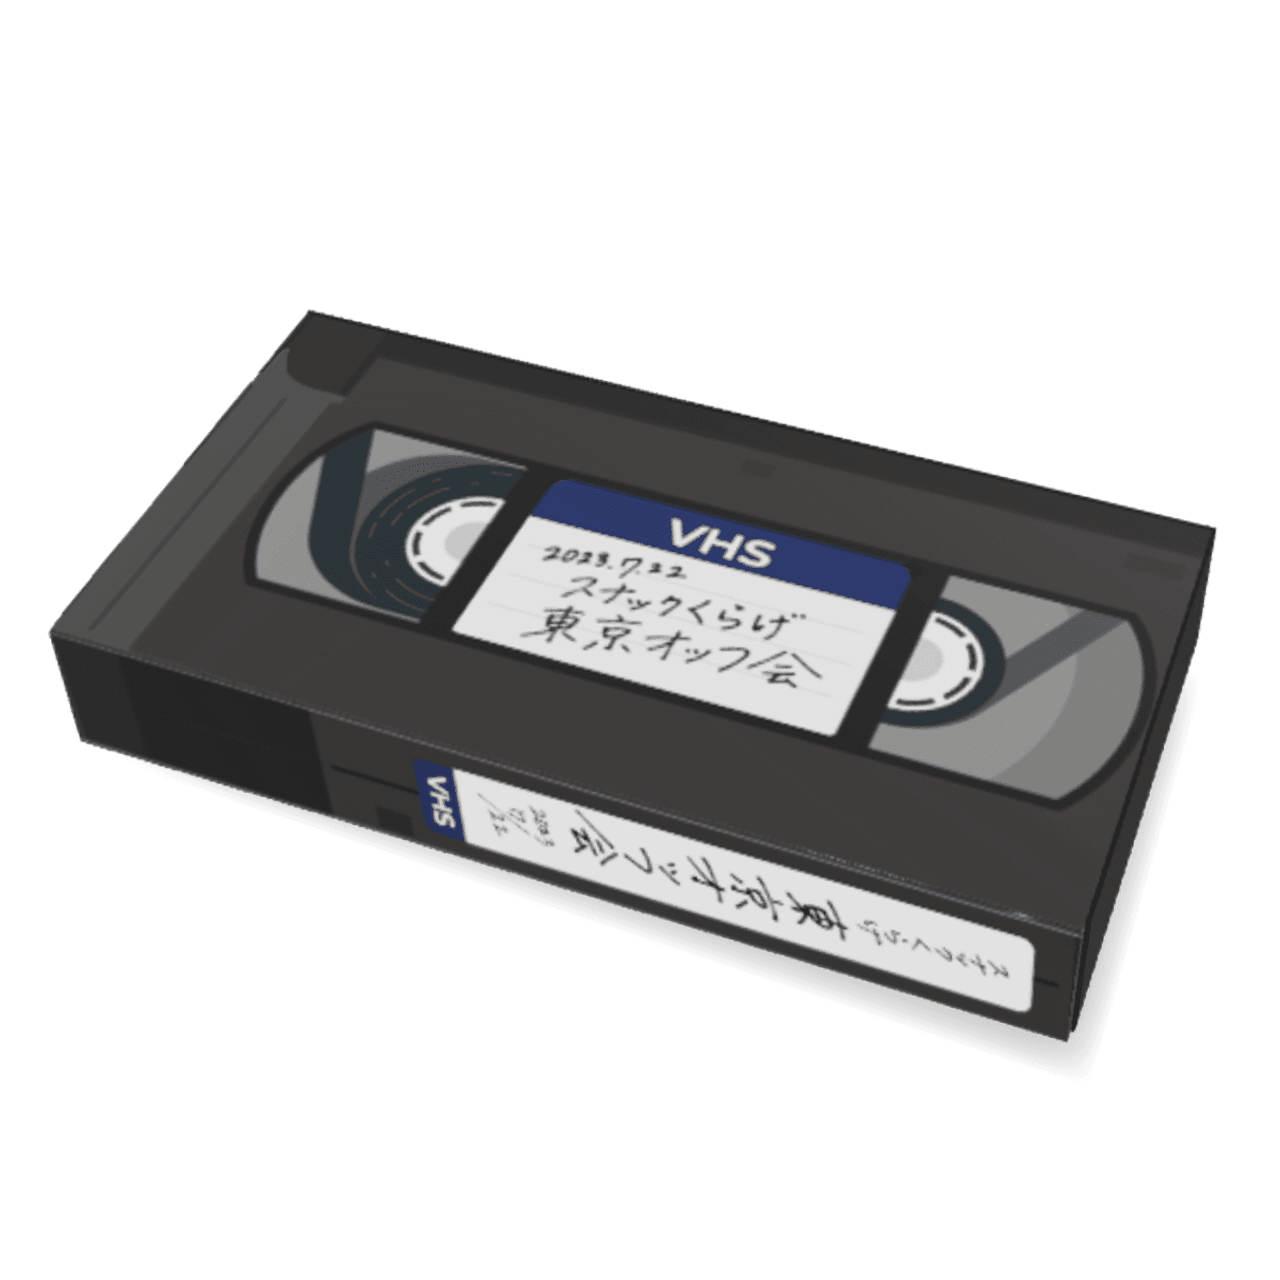 第1回スナックくらげ東京オッフ会 VHS